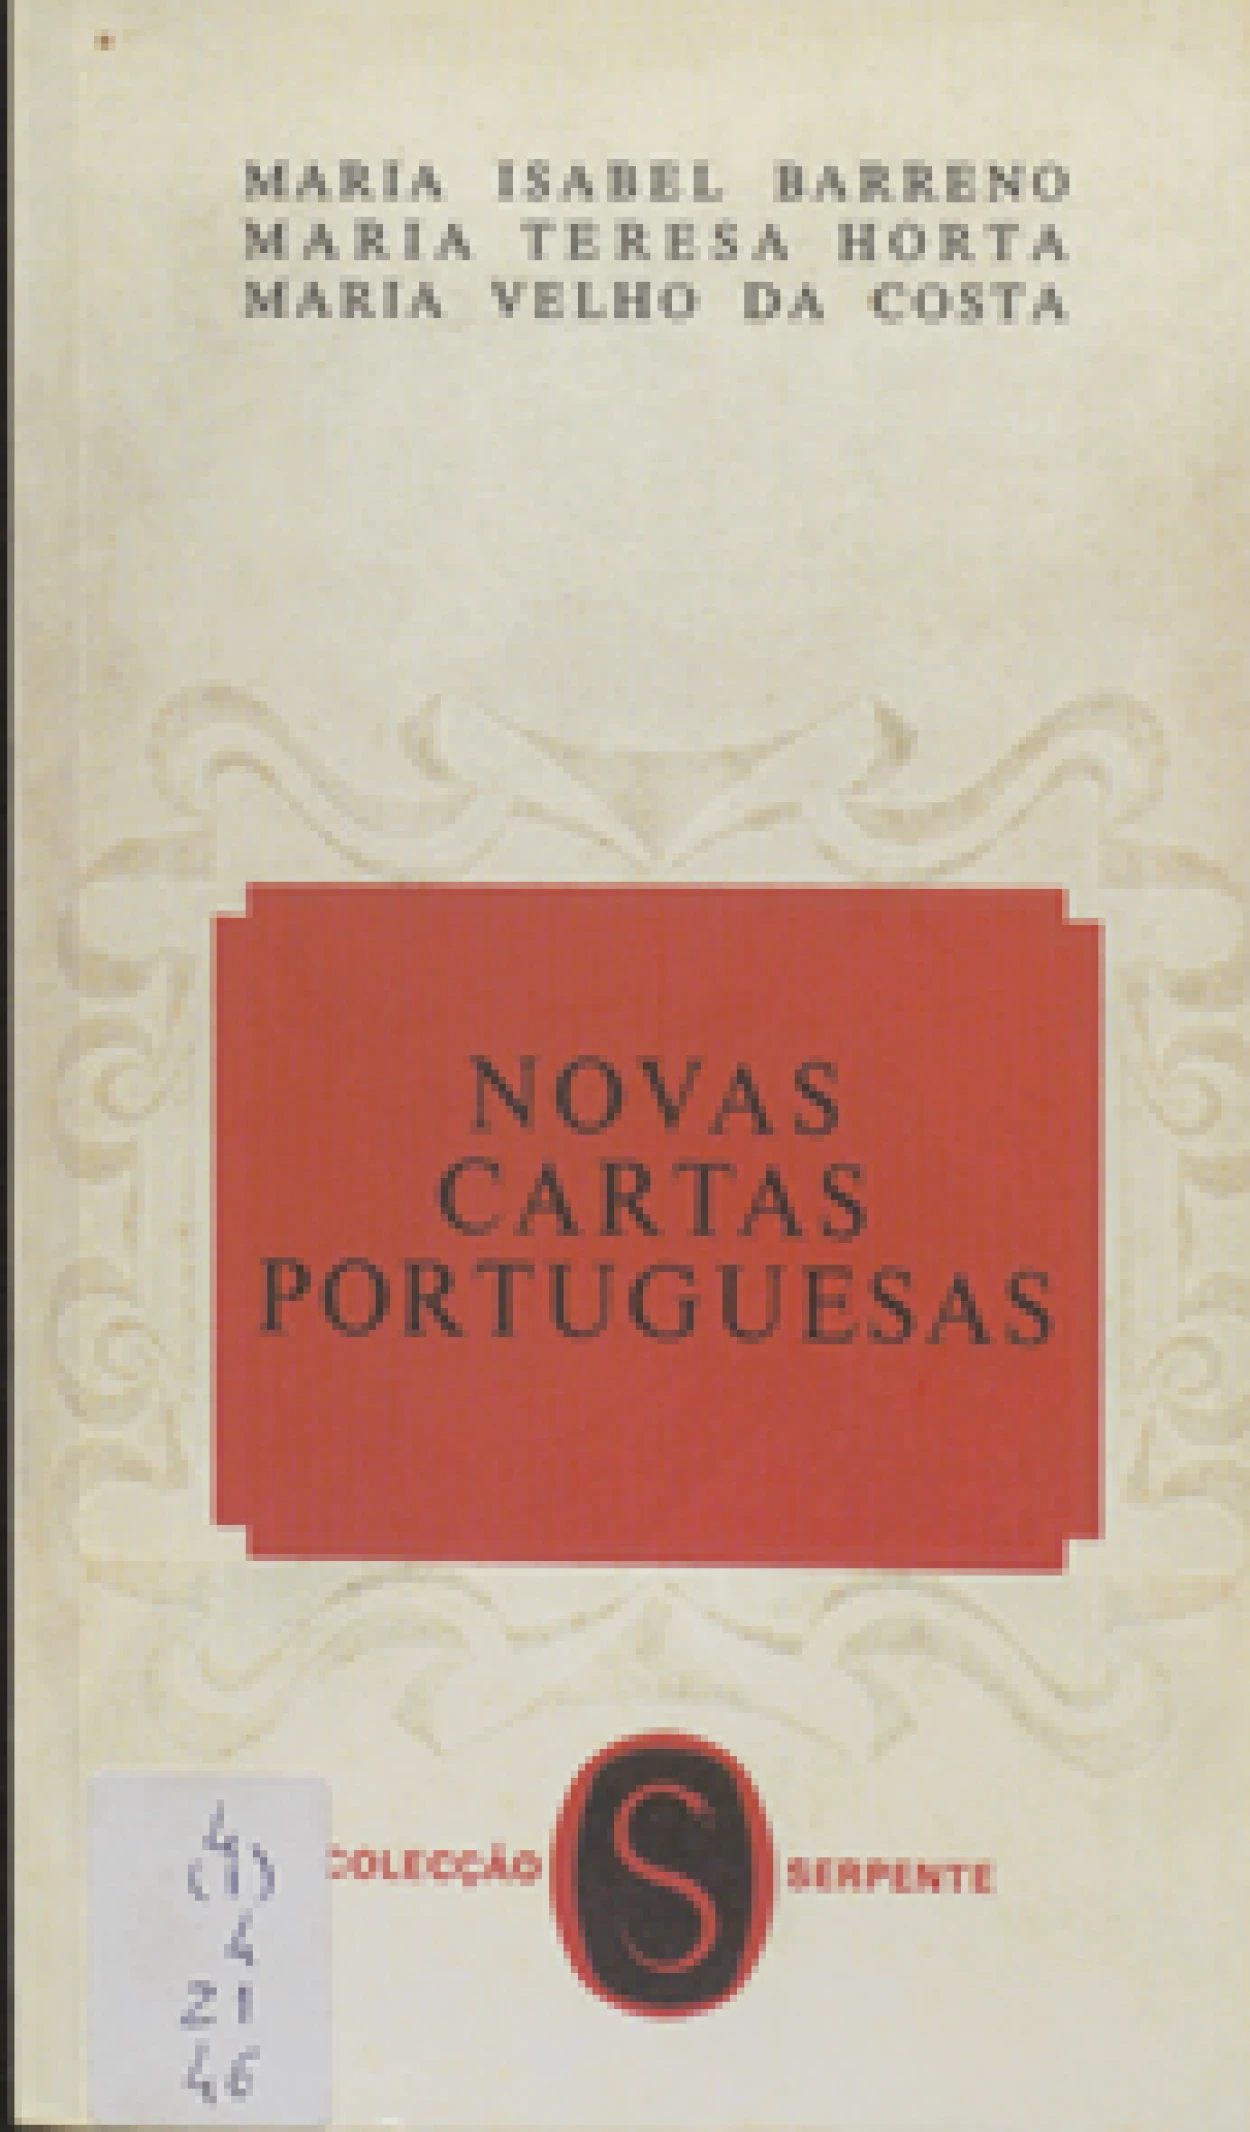 Barreno, Maria Isabel, 1939–2016, e outras
Novas cartas portuguesas / Maria Isabel Barreno, Maria Teresa Horta, Maria Velho da Costa.
[Lisboa] : Estúdios Cor, imp. 1972.